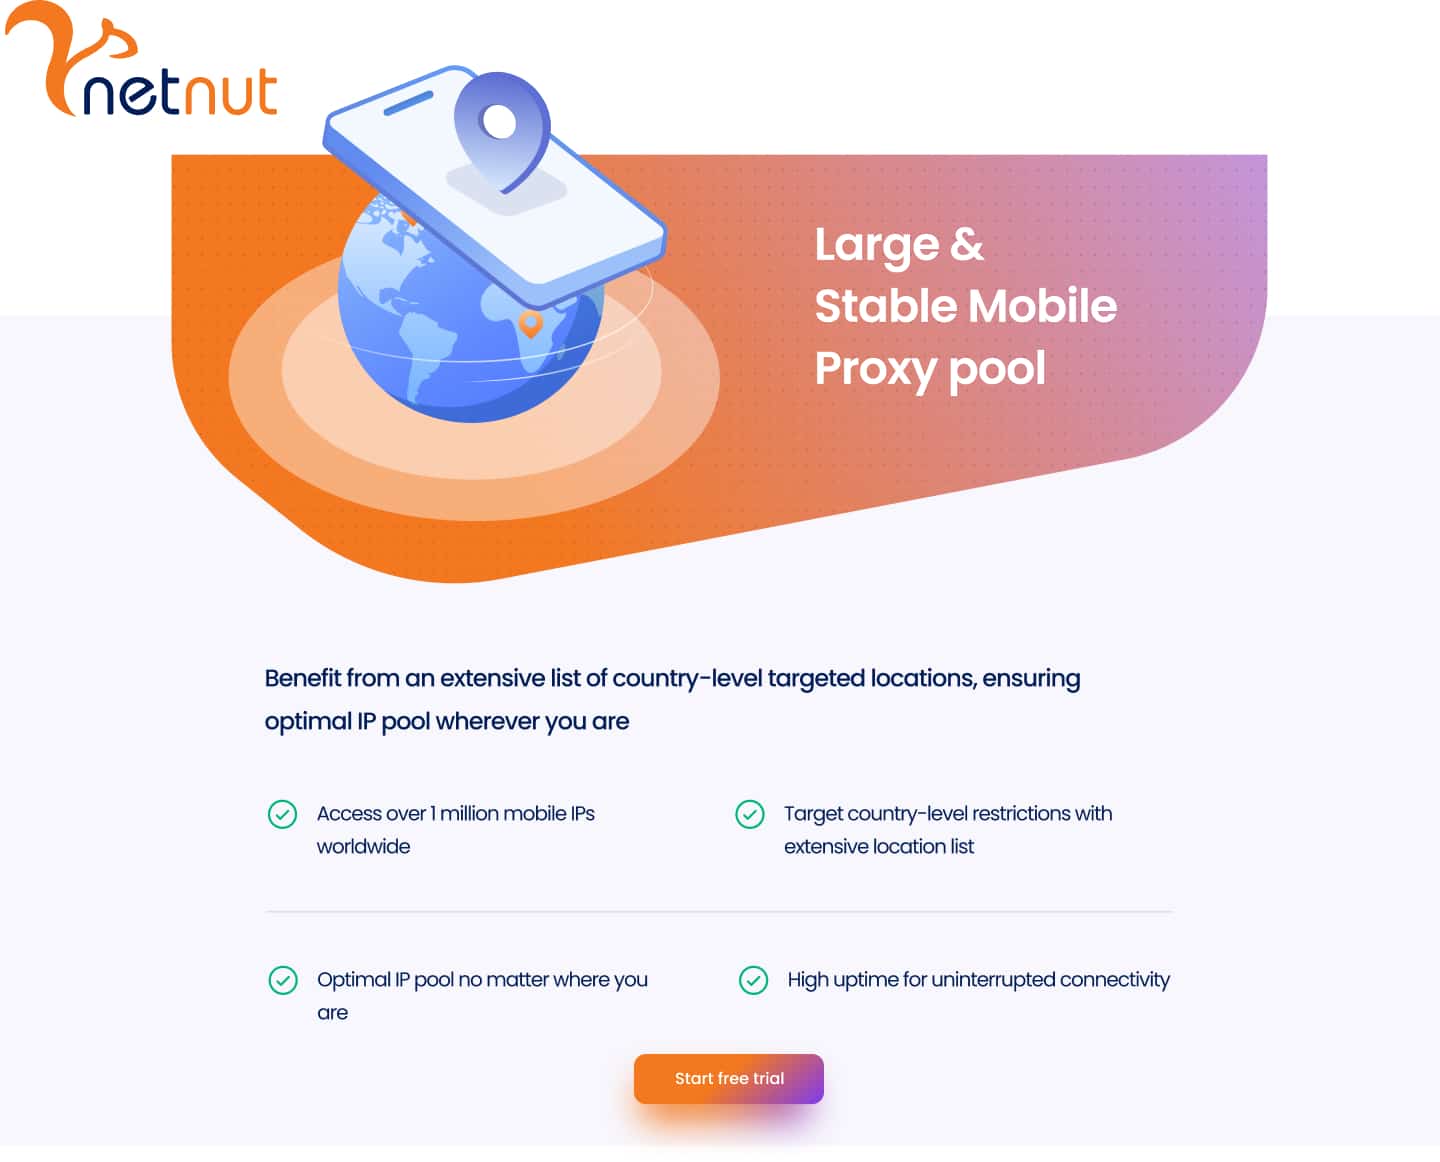 NetNut mobile proxies descriptions